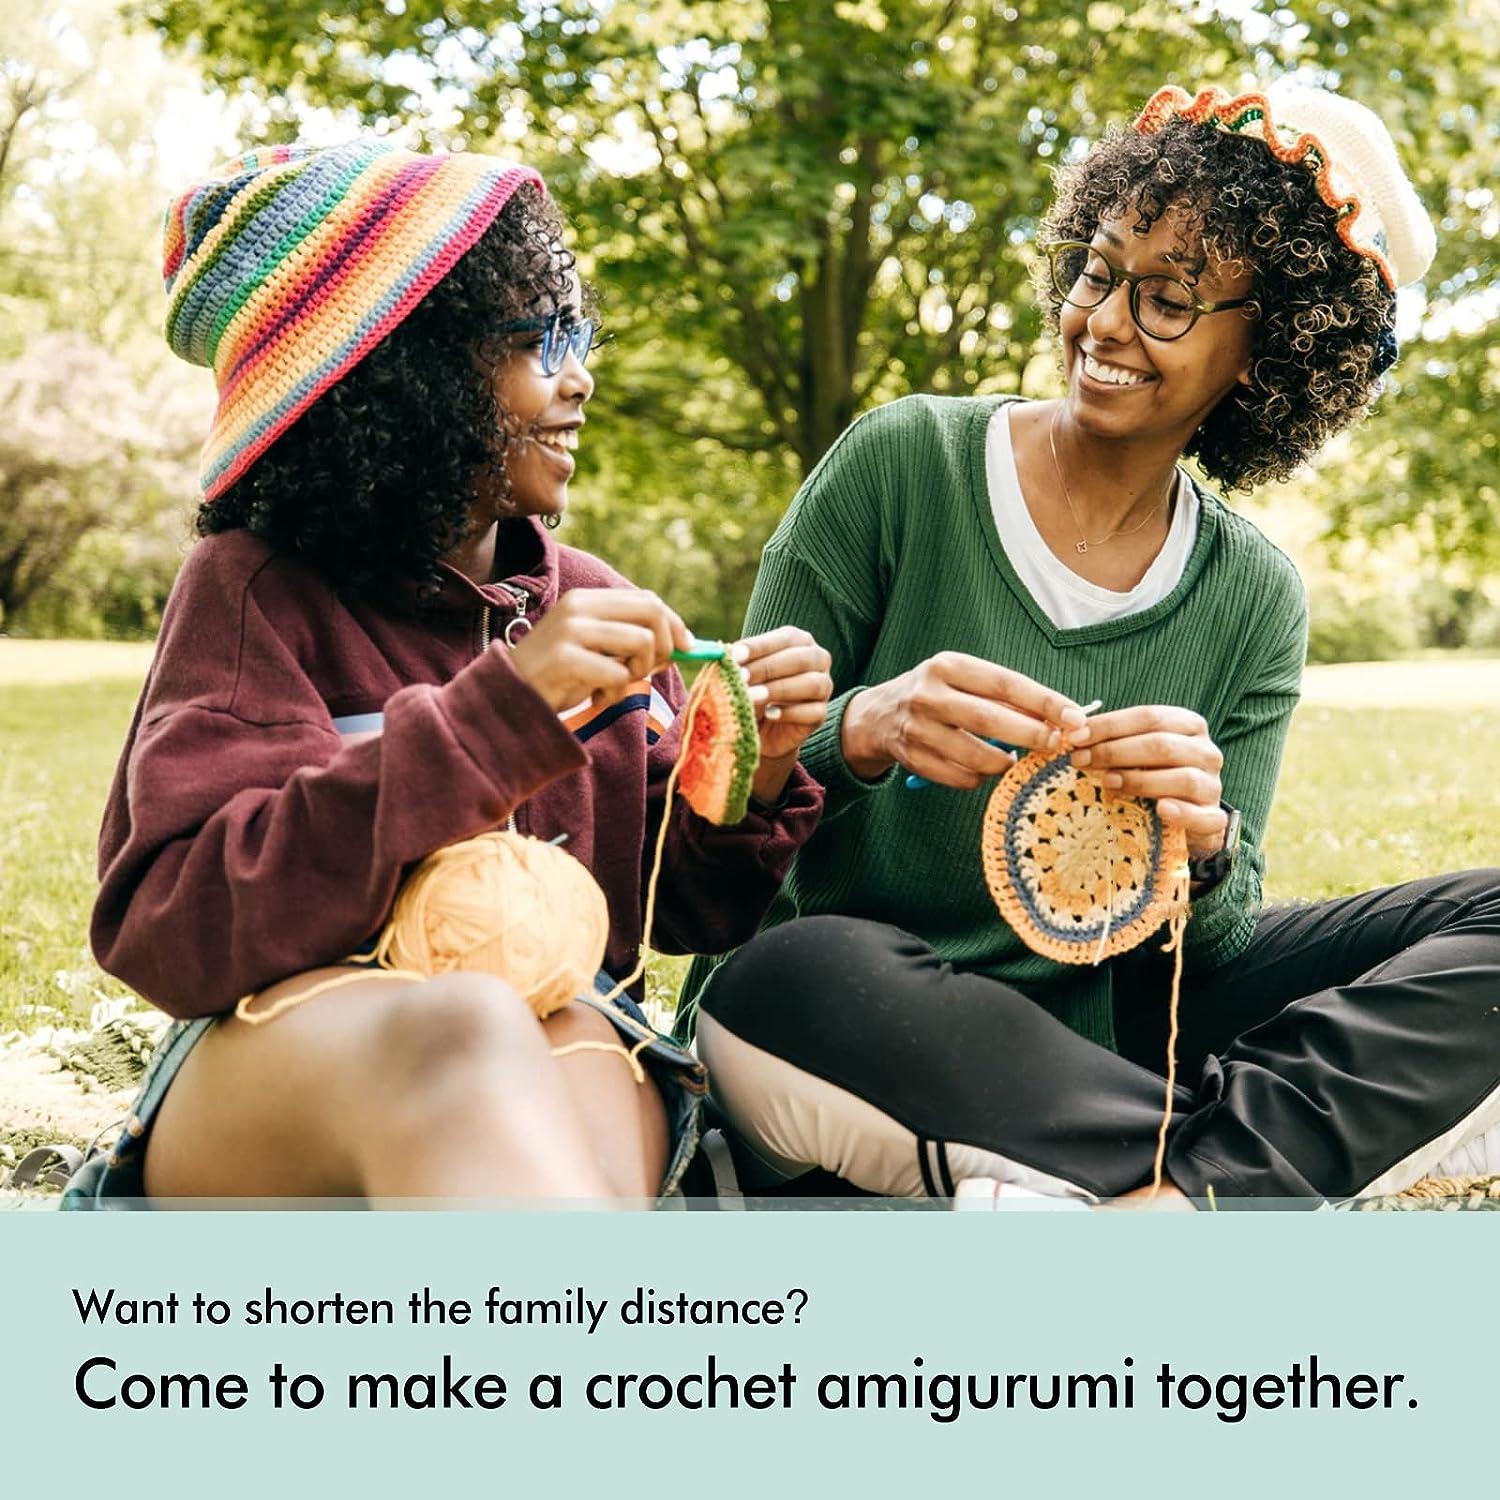 loveknotpop Crochet Kit for Beginners: Crochet Animal Kit for